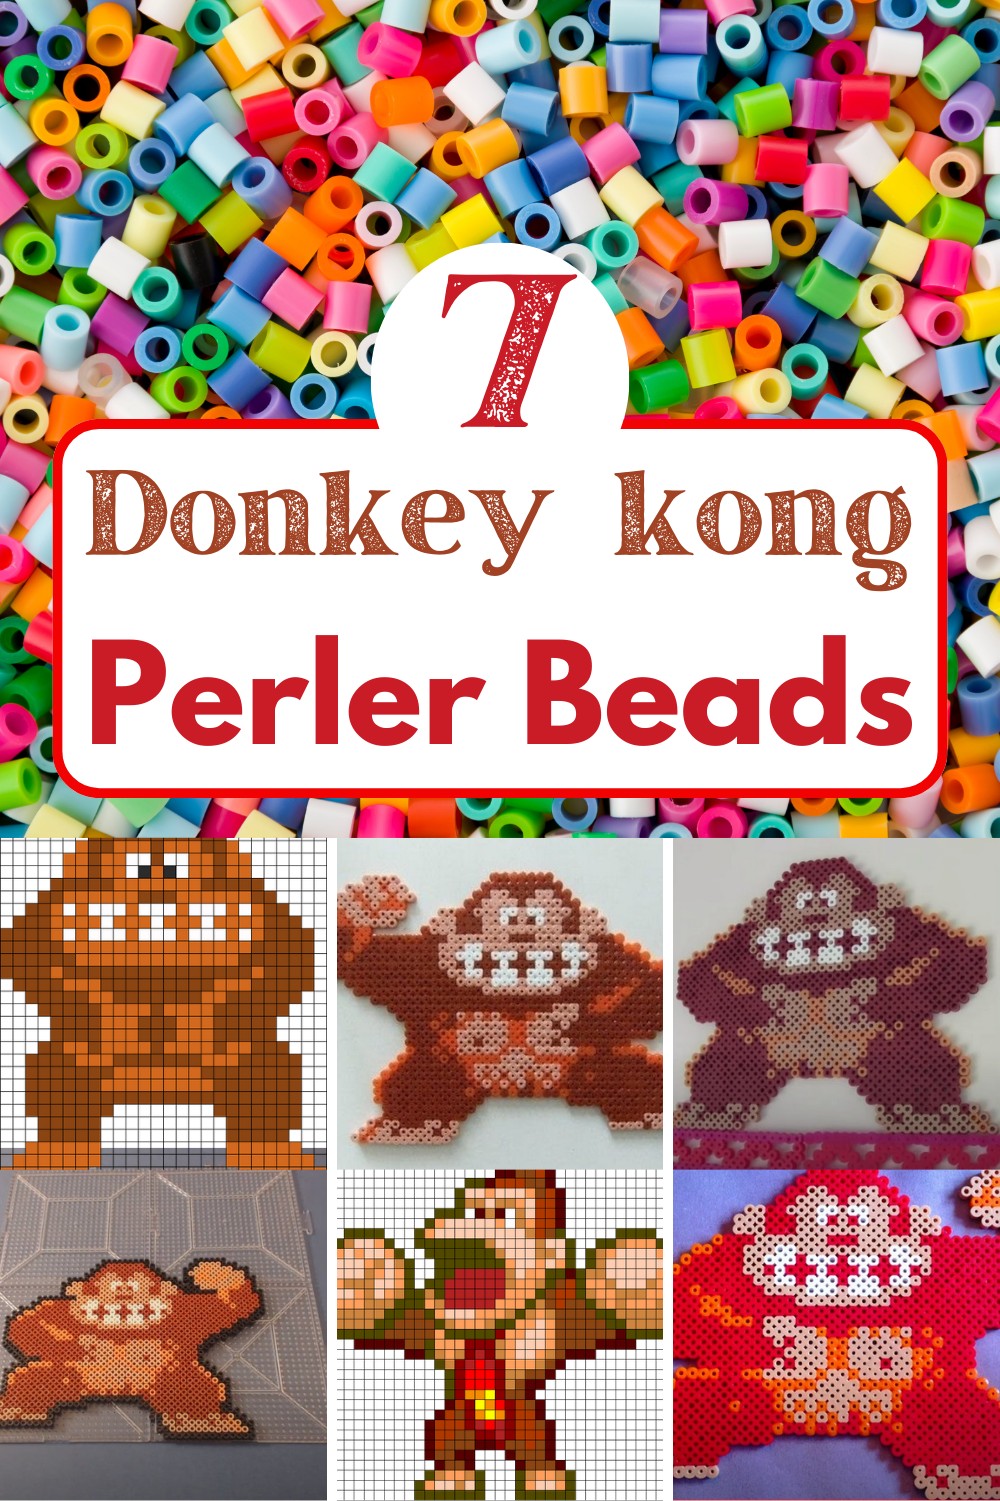 Donkey kong Perler Beads patterns